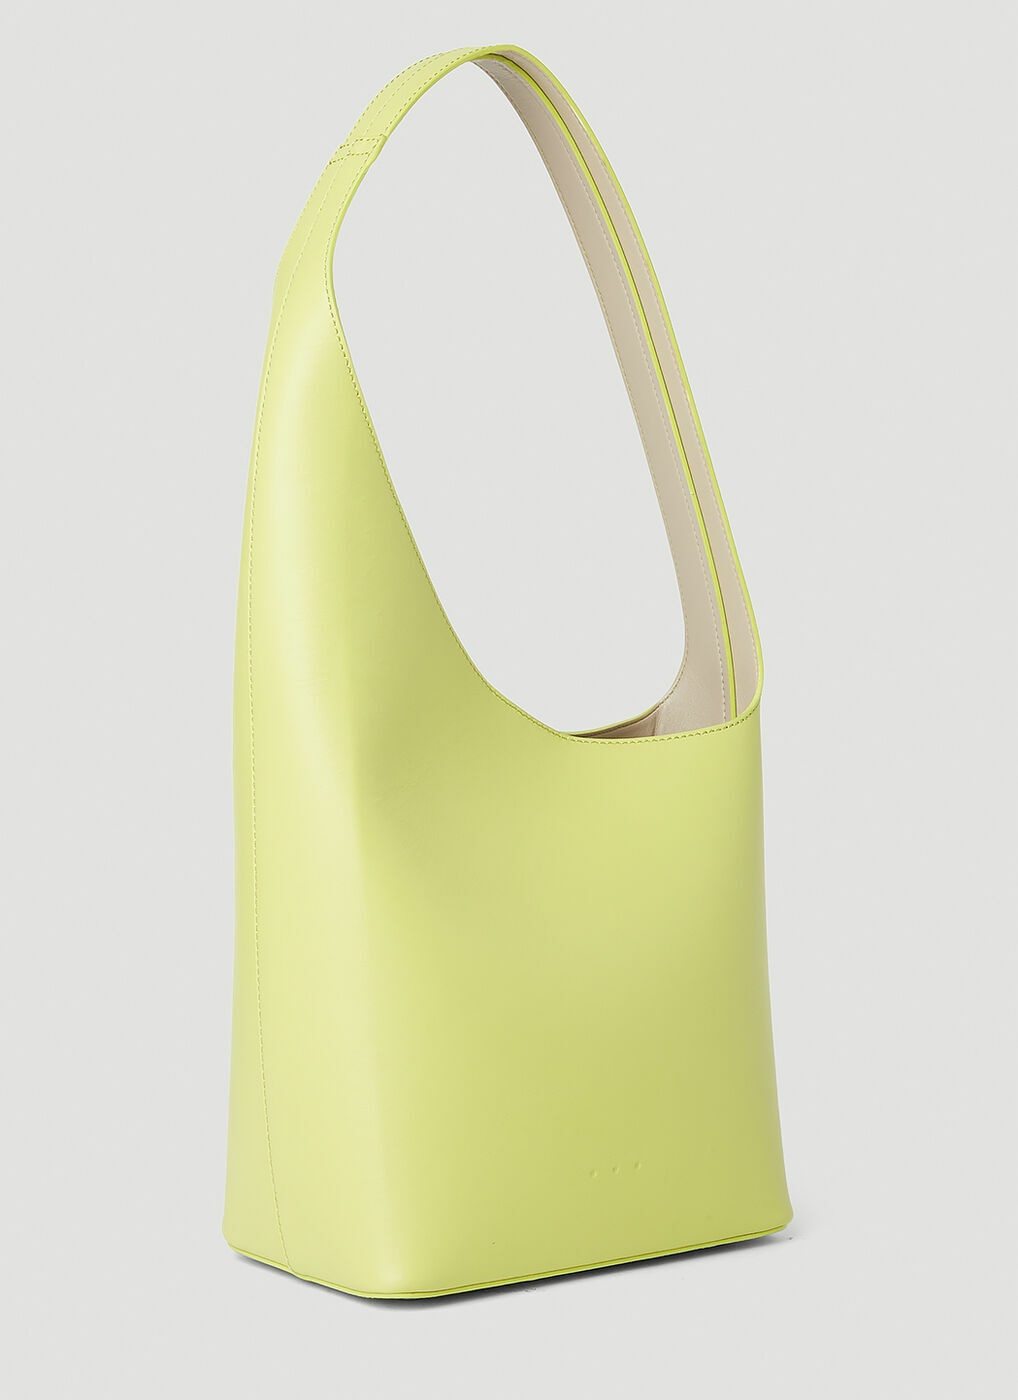 Aesther Ekme 'sac Midi' Bag in Yellow